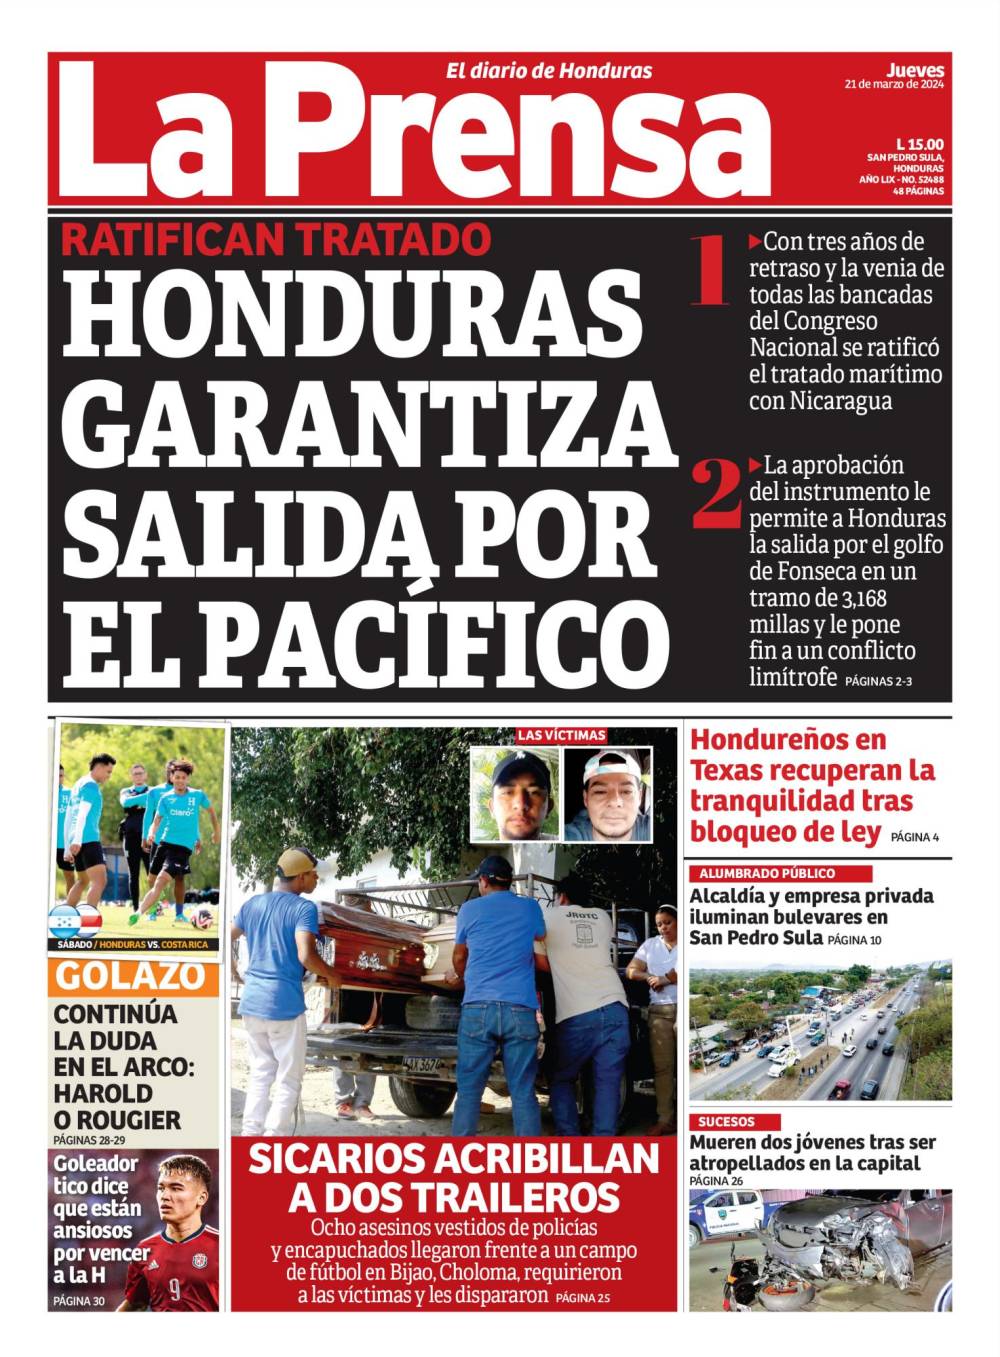 Honduras garantiza salida por el Pacífico